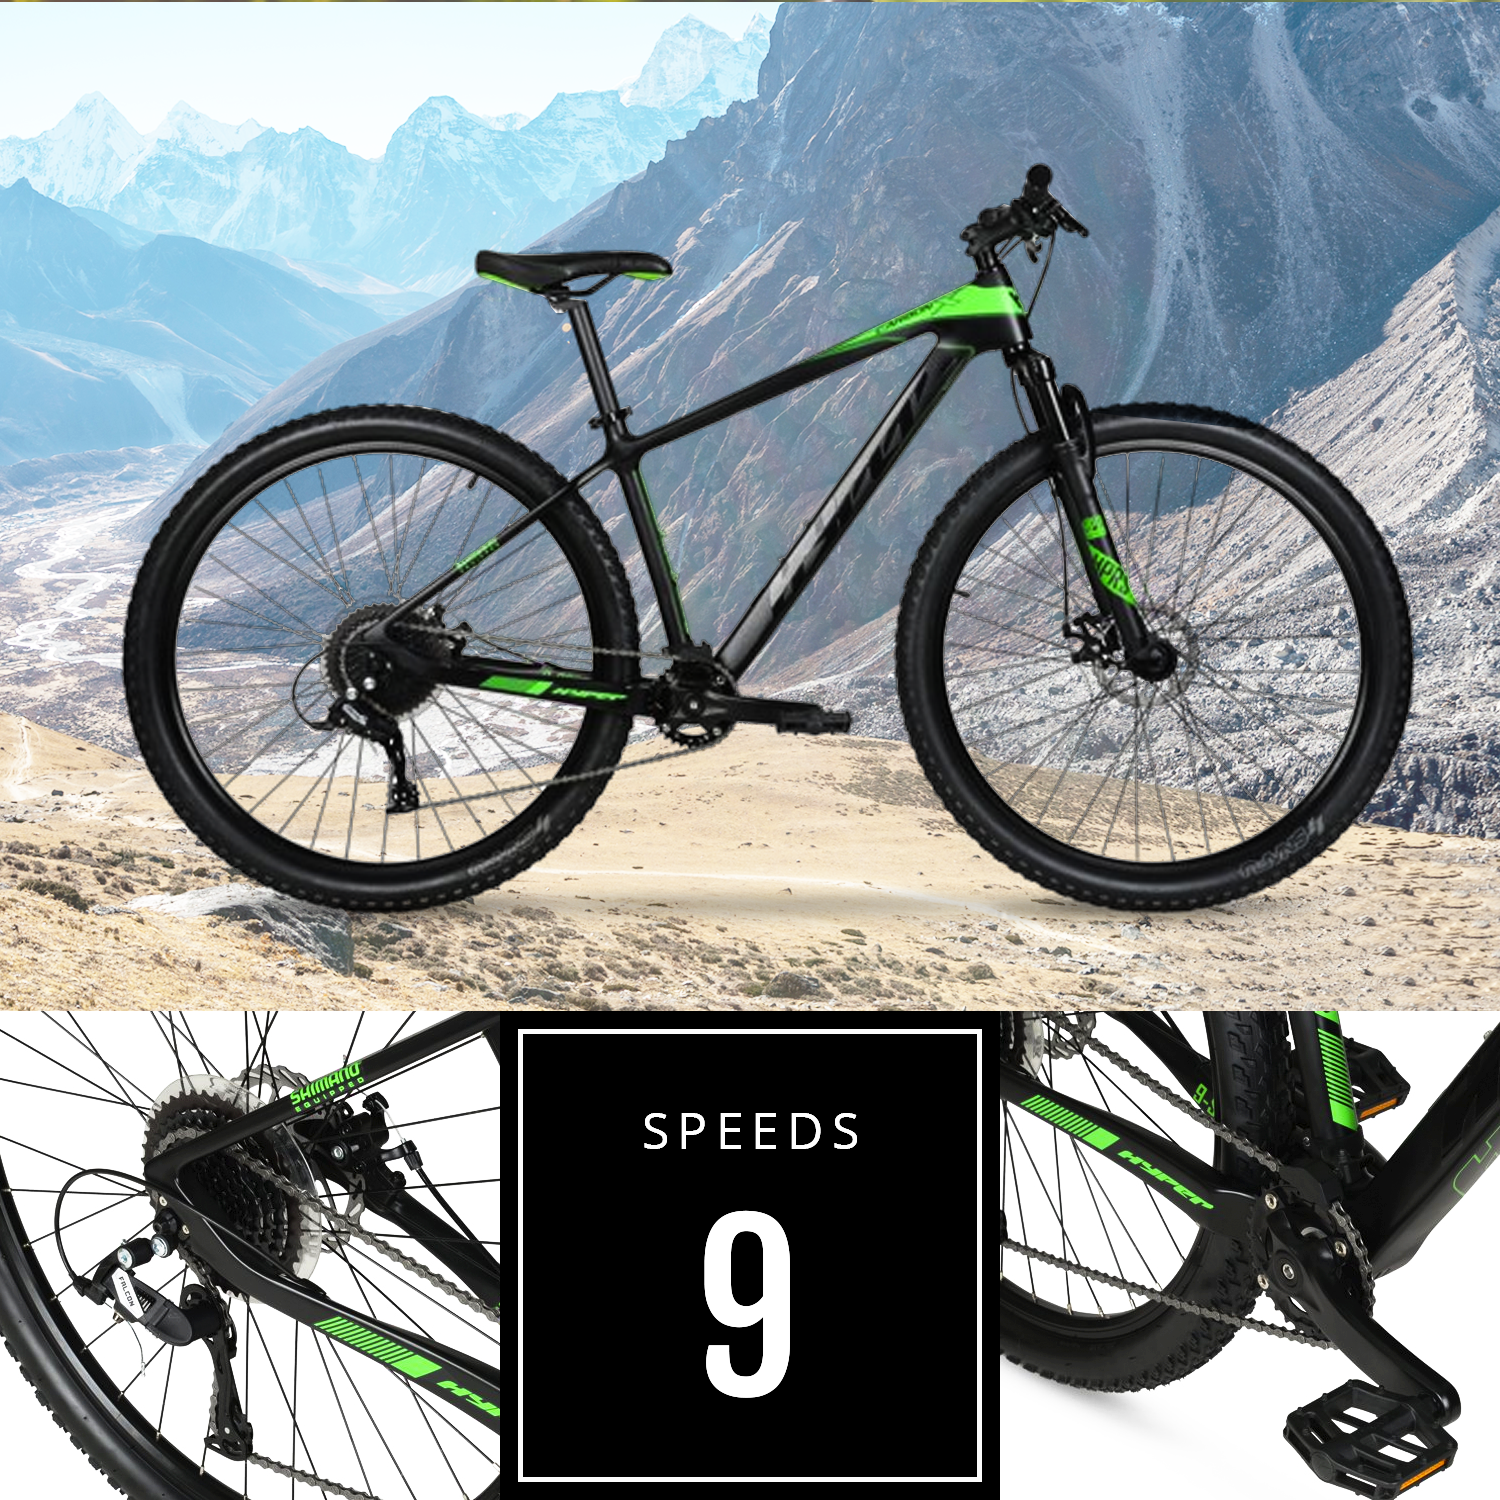 Hyper 29" Carbon Fiber Men's Mountain Bike, Black/Green - image 2 of 12